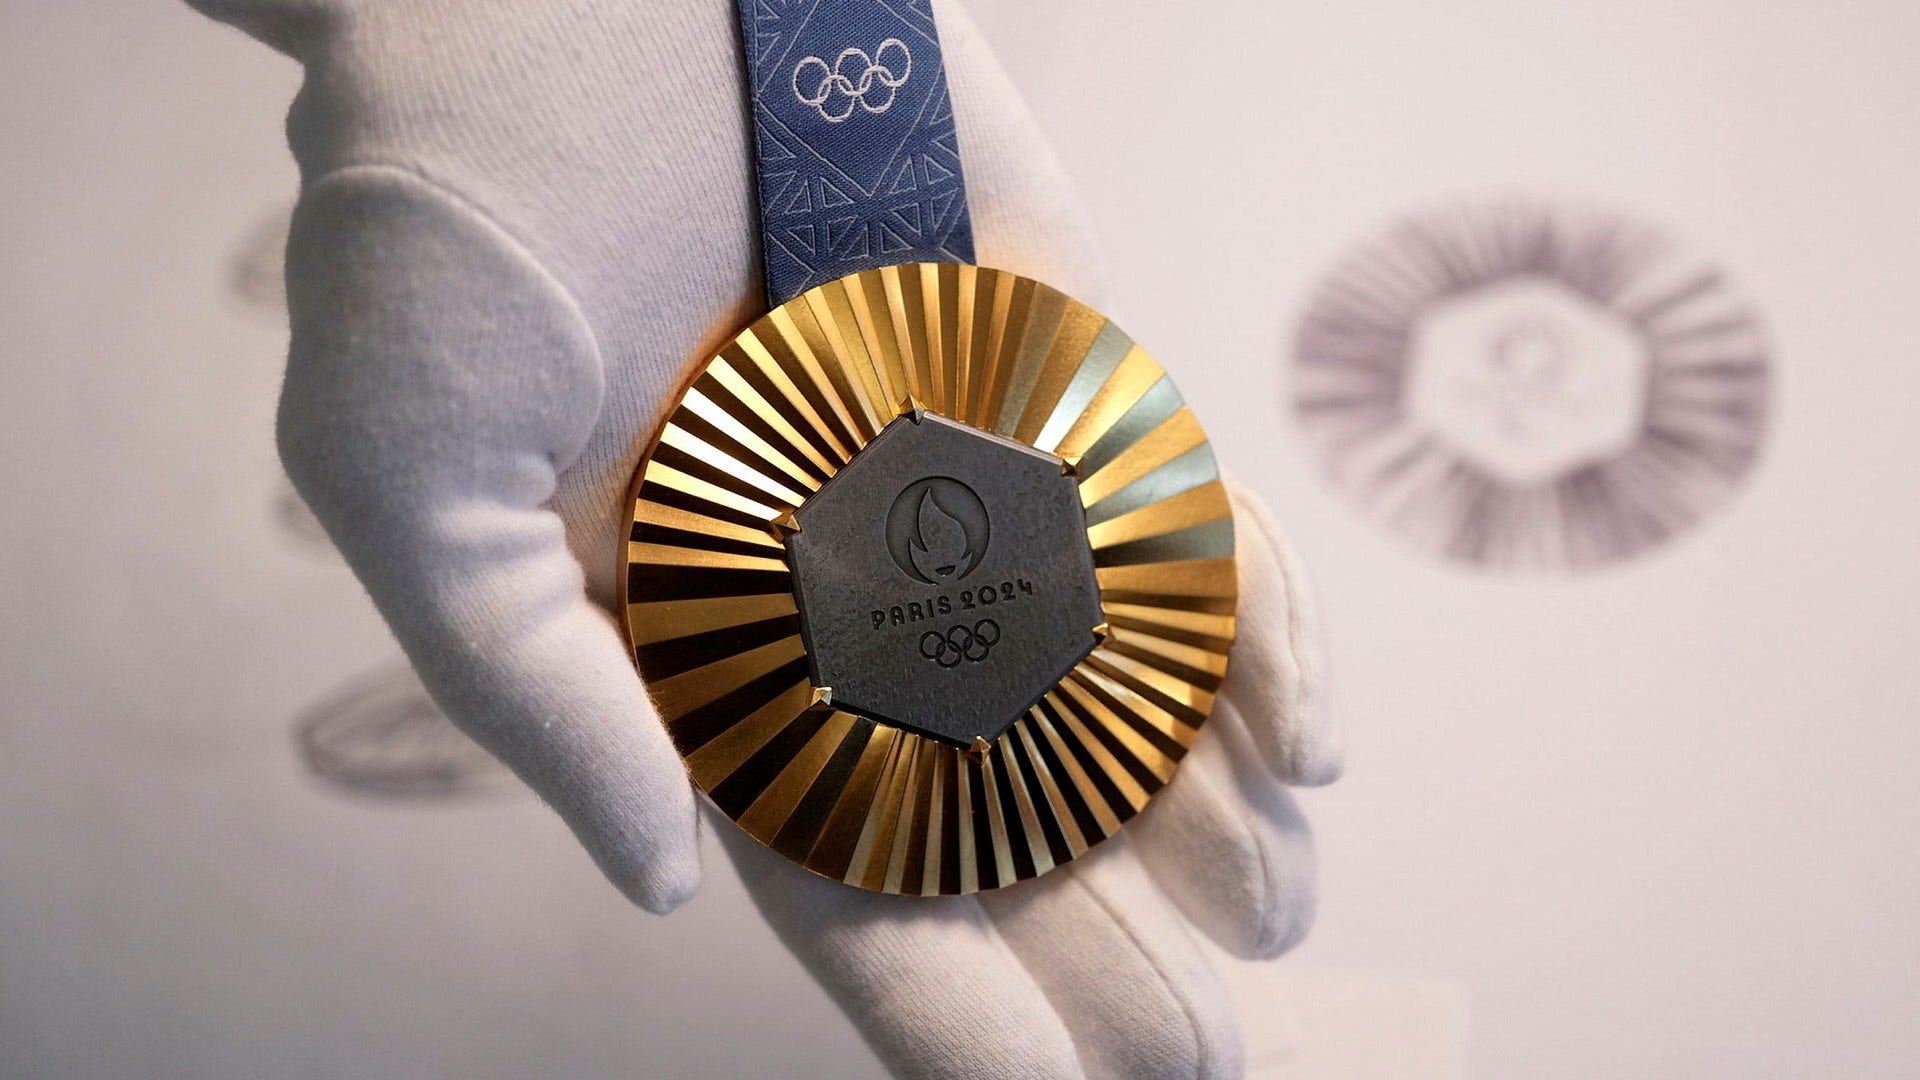 Så ser en guldmedalj i OS 2024 ut. Den sexkantiga mörka delen av medaljen består av järn från Eiffeltornet.